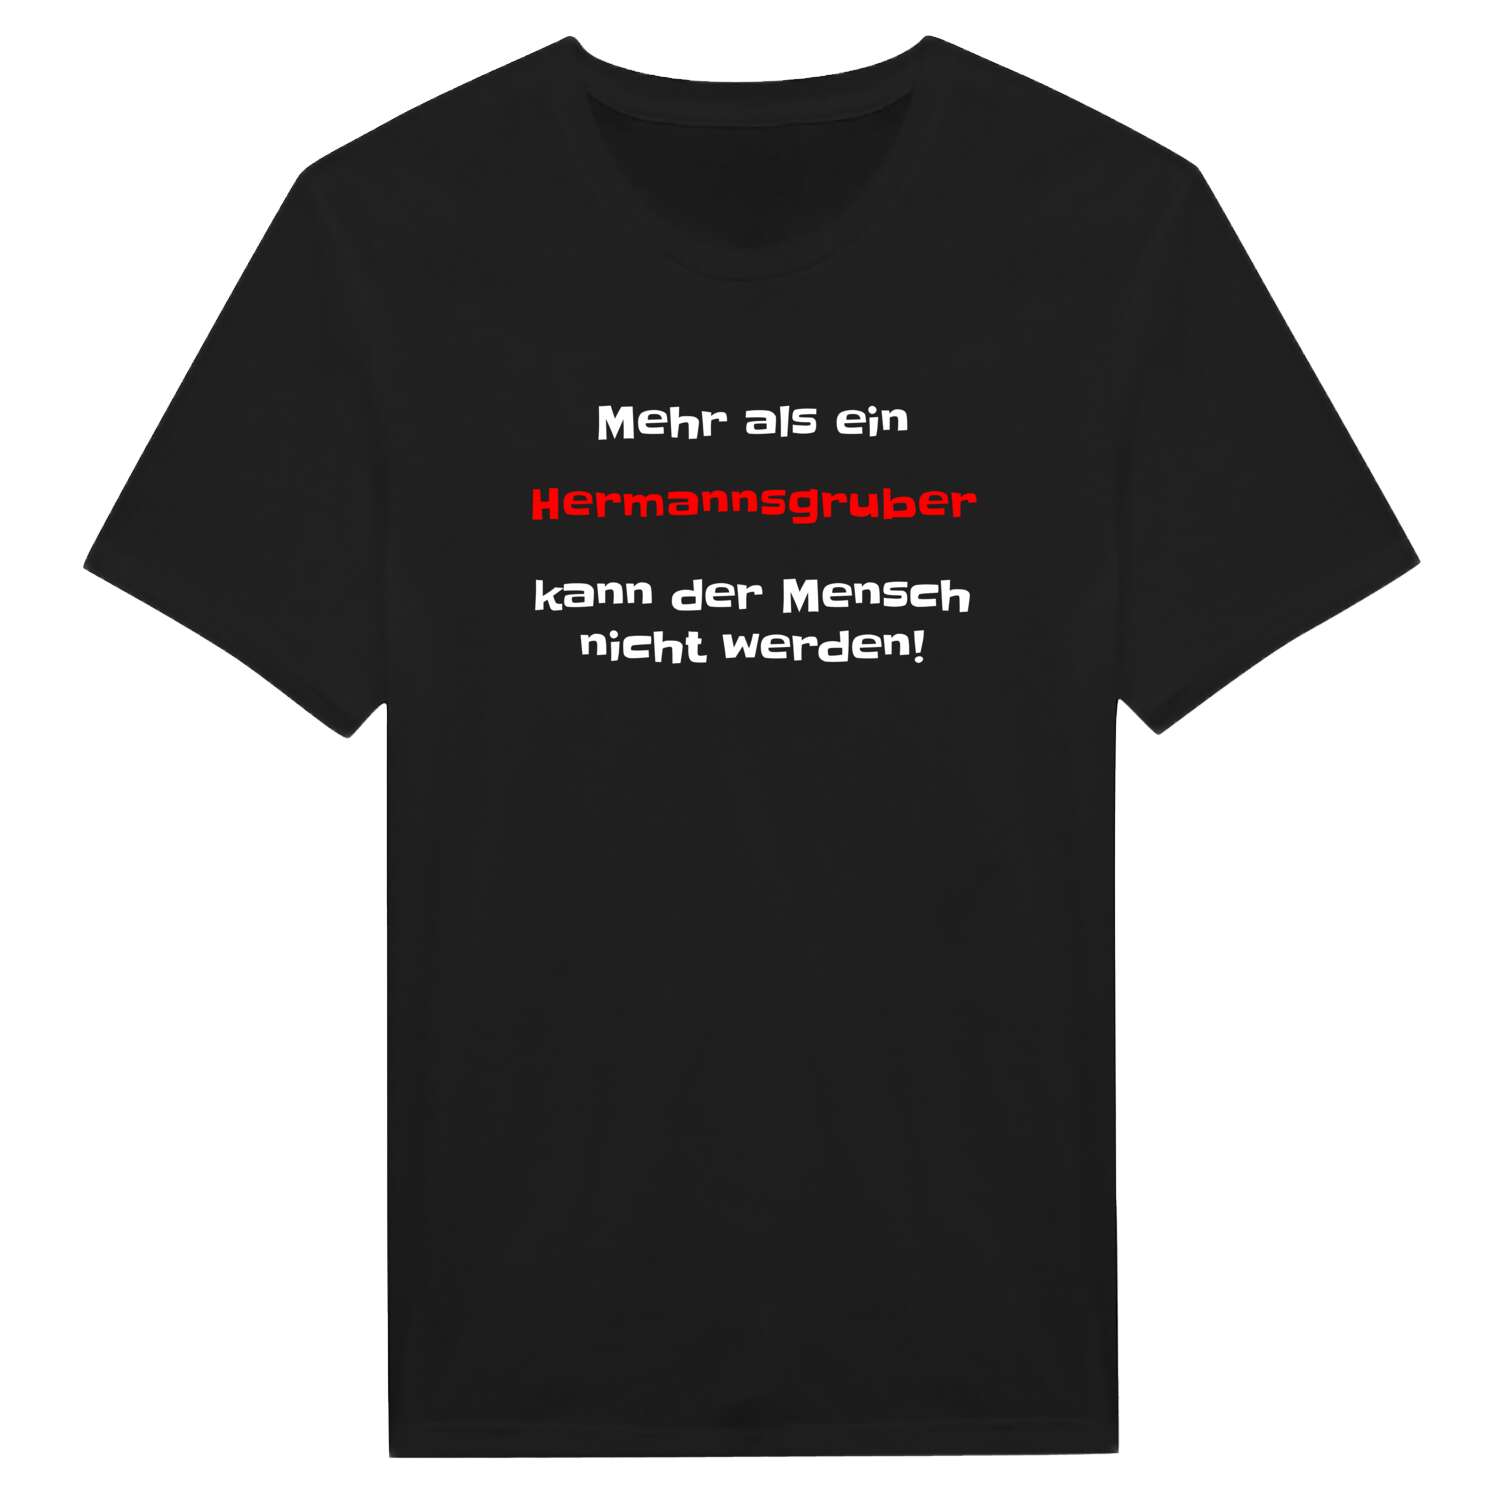 Hermannsgrub T-Shirt »Mehr als ein«